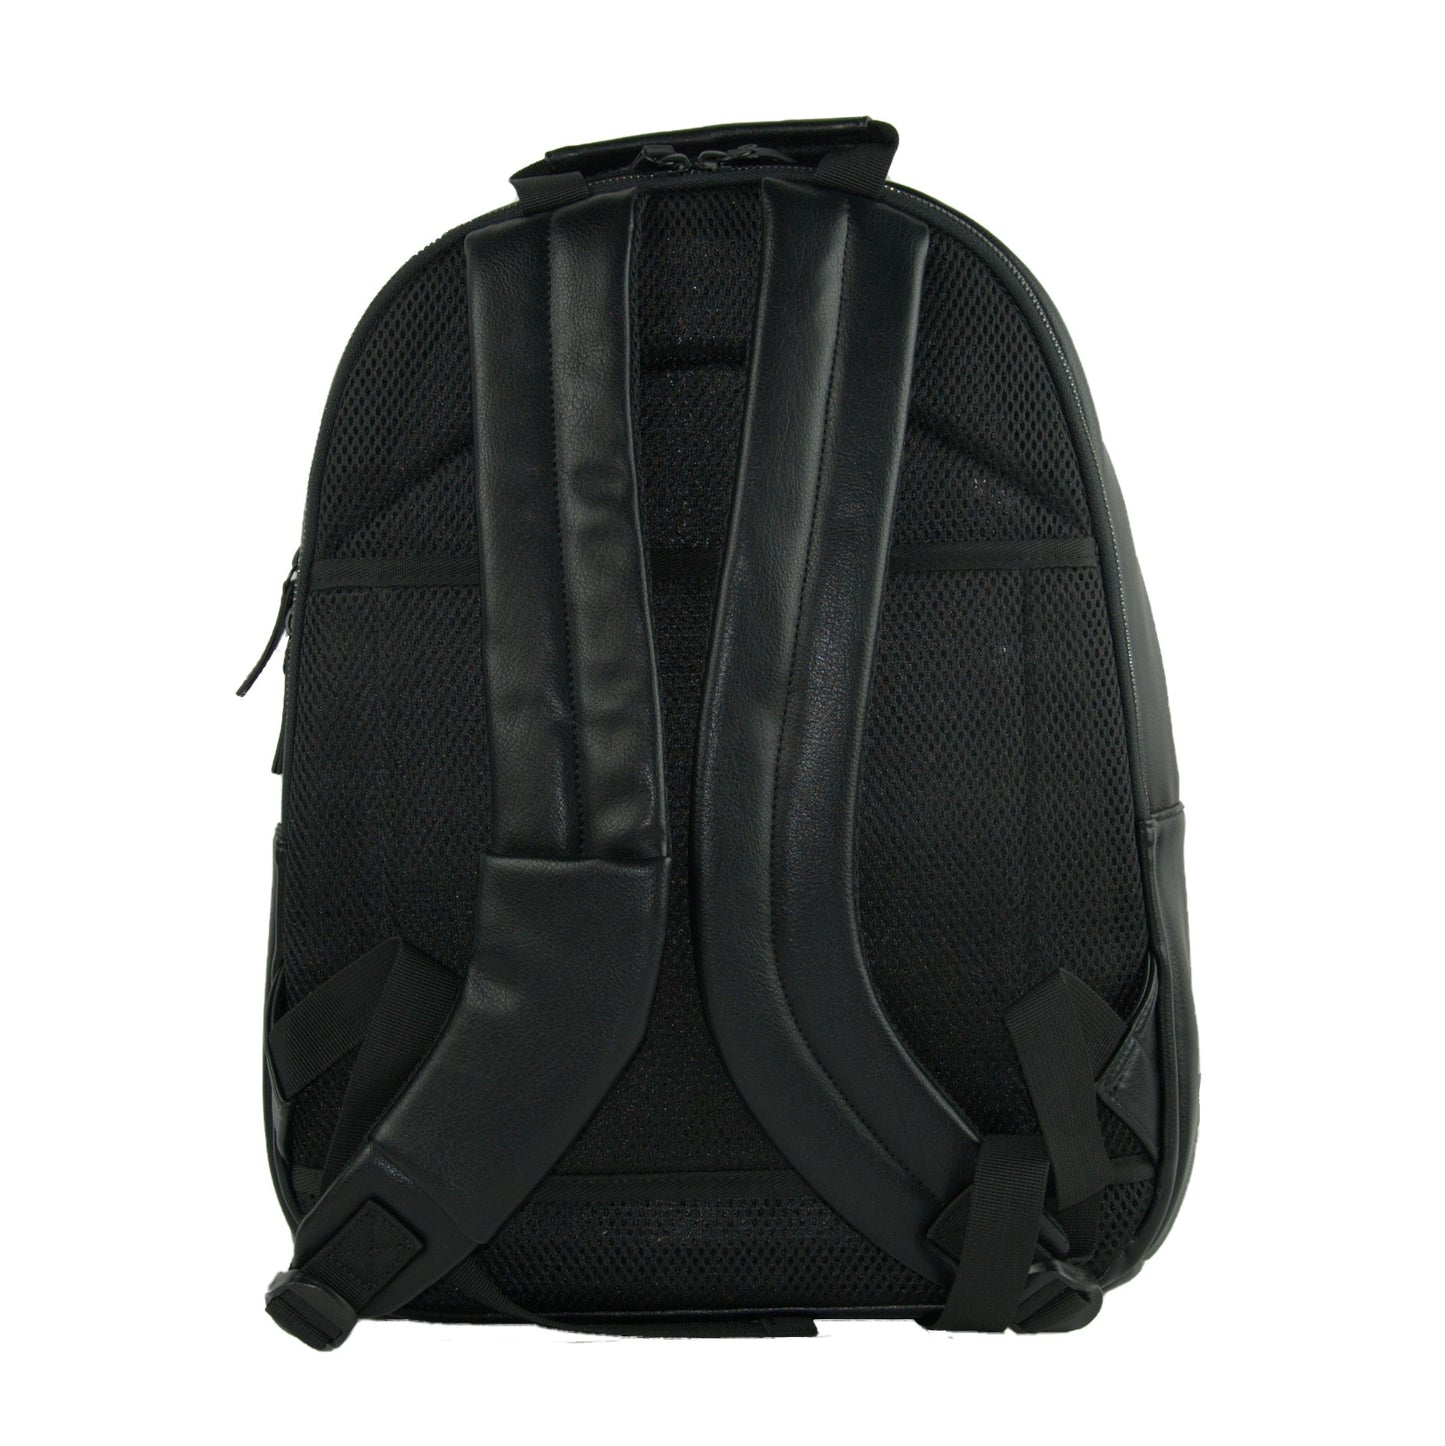 Chic Urban Play Off Backpack in Sleek Black